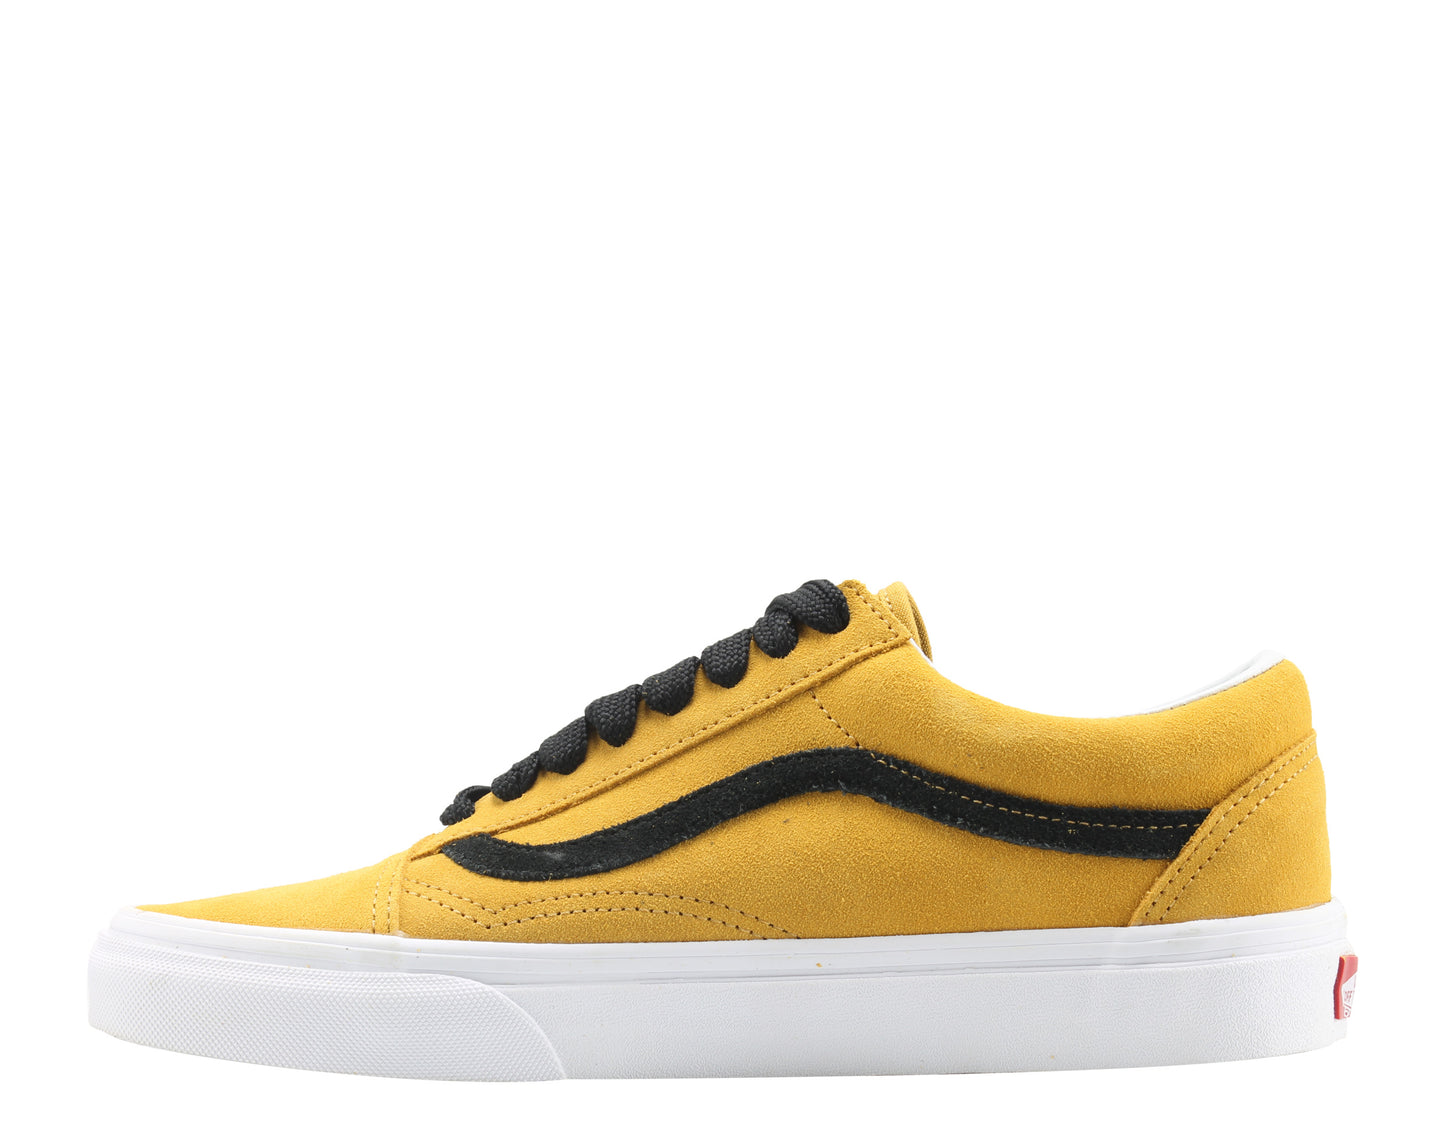 Vans Old Skool Tawney Yellow/Black Classic Low Top Sneakers VN0A38G1R0Y